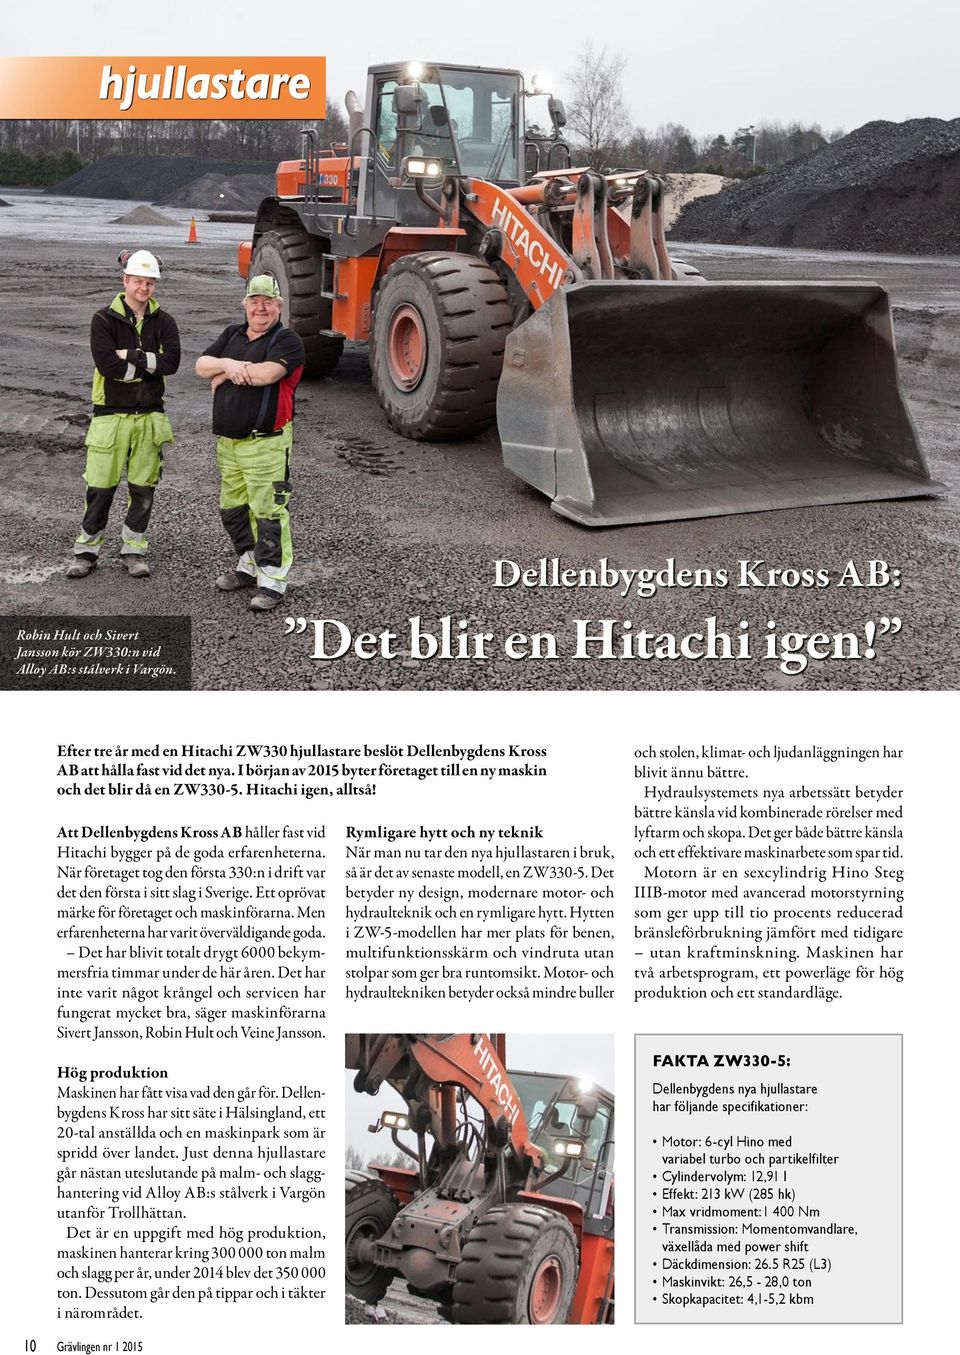 Hitachi igen, alltså! Att Dellenbygdens Kross AB håller fast vid Hitachi bygger på de goda erfarenheterna. När företaget tog den första 330:n i drift var det den första i sitt slag i Sverige.